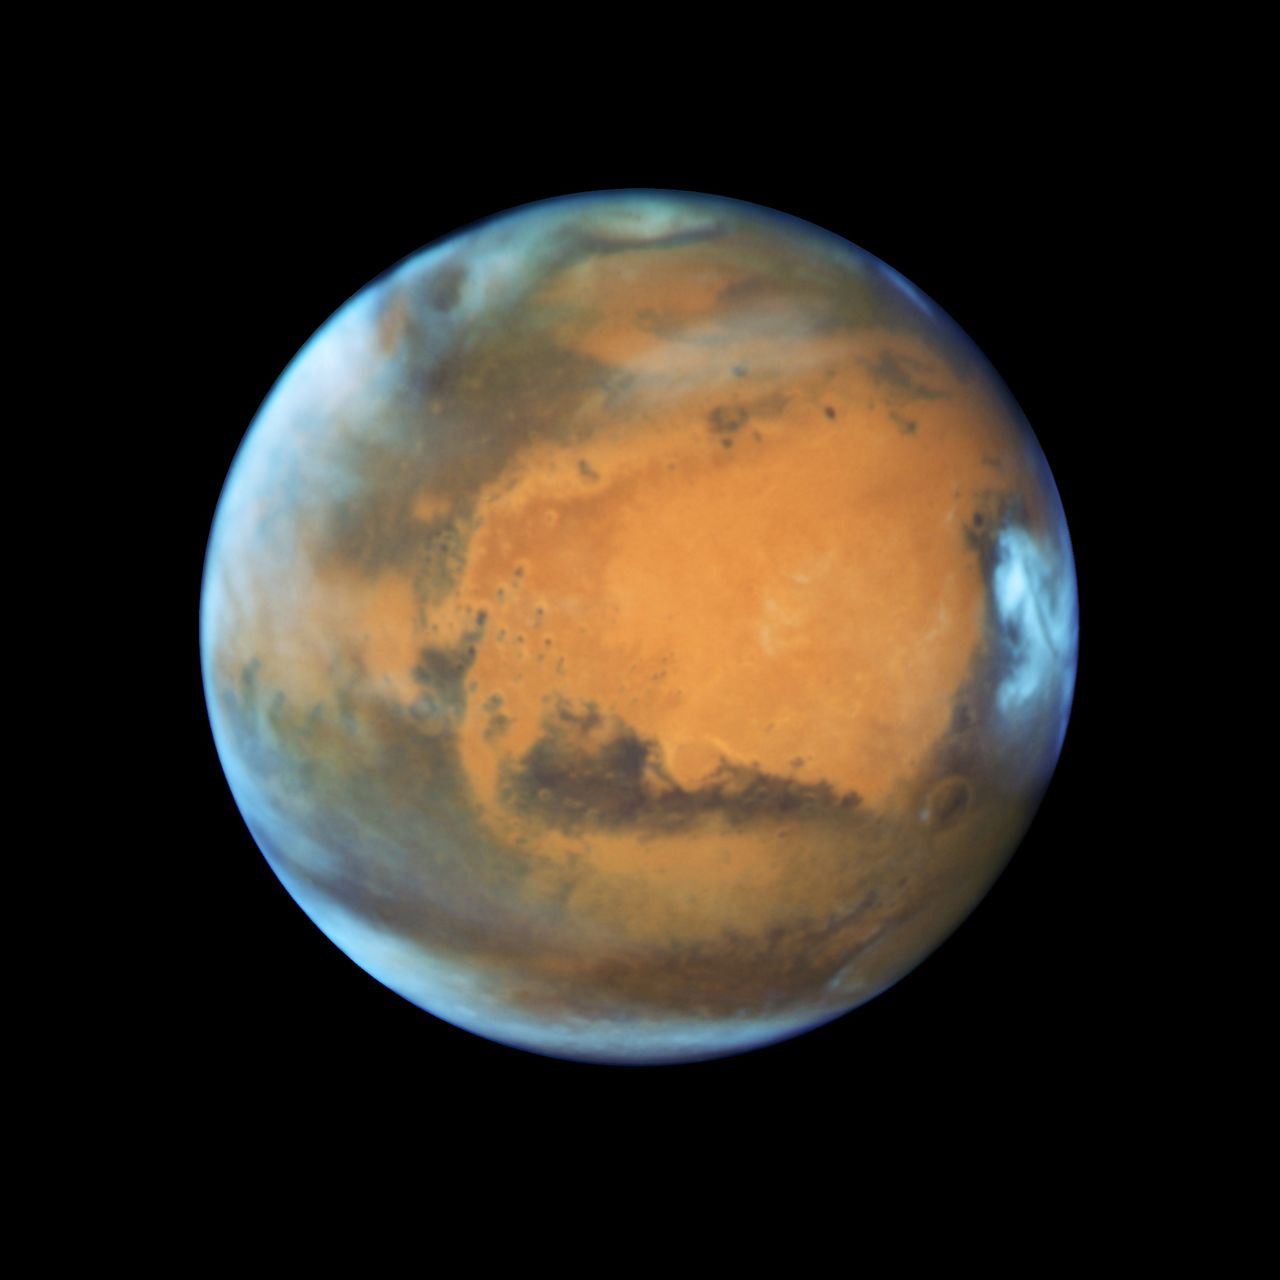 كوكب المريخ في صورة التقطها تلسكوب هابل التابع لإدارة الطيران والفضاء الأمريكية (ناسا) من أرشيف رويترز.